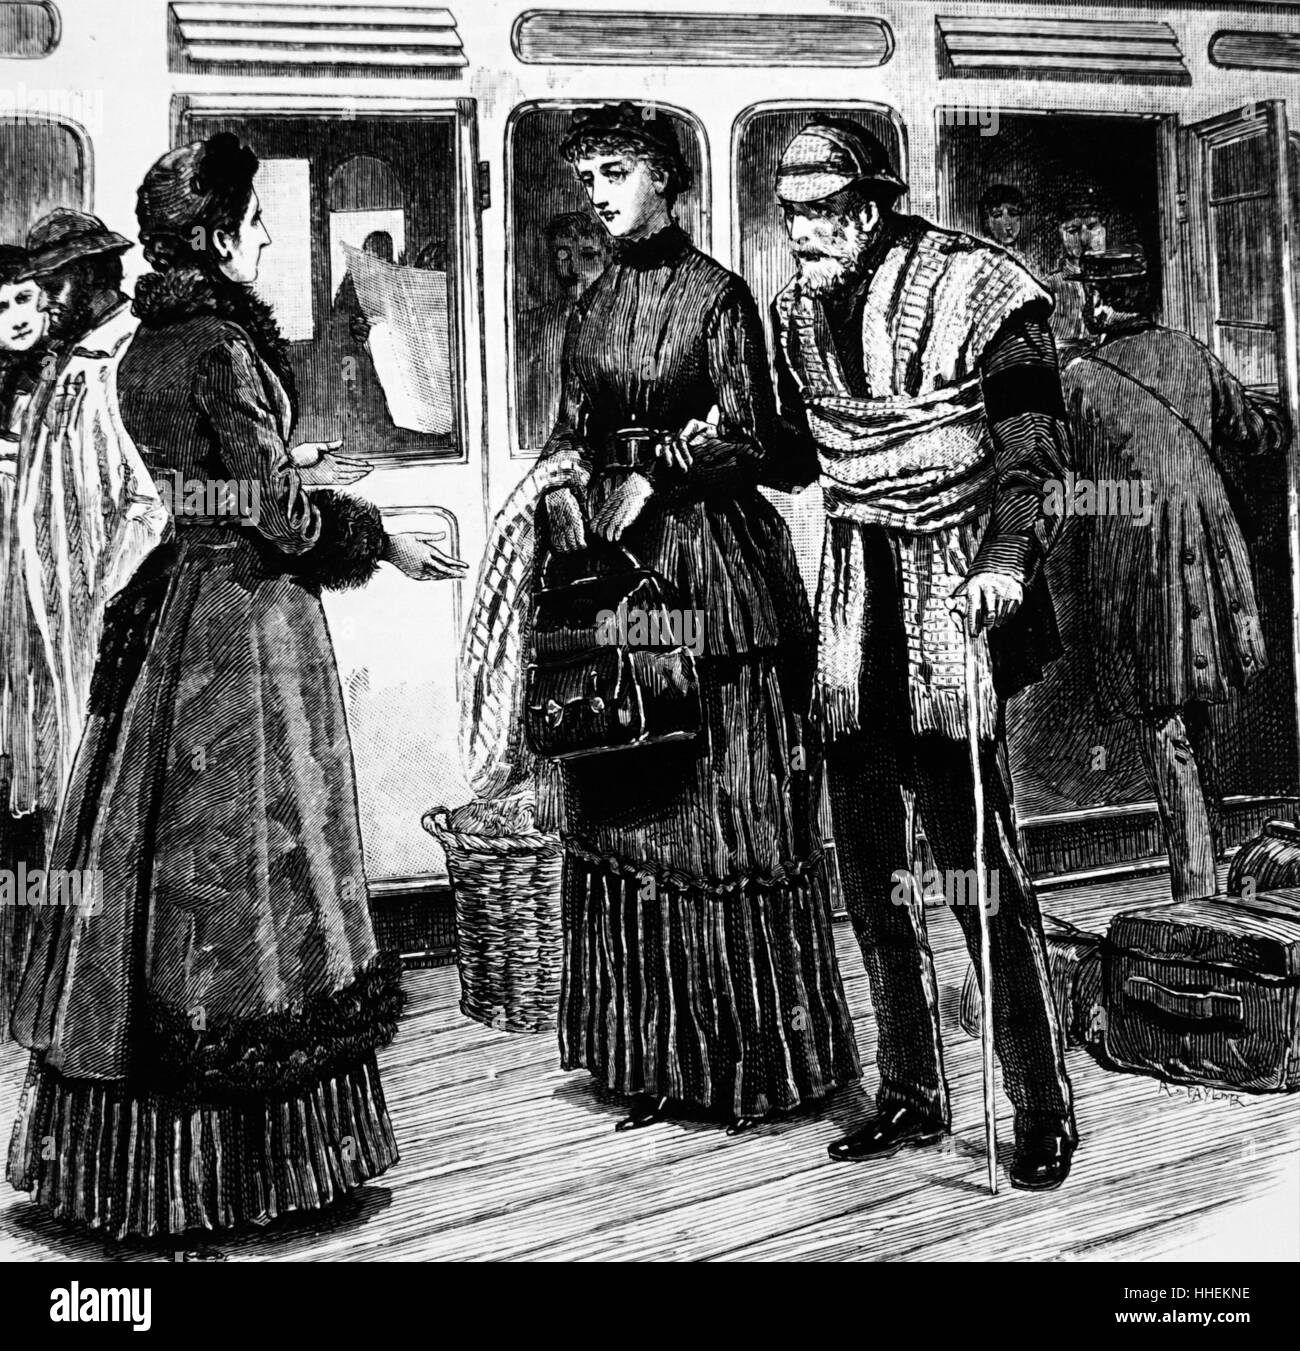 Illustration représentant un veuf âgé, portant une bande de deuil, d'arriver à une station escorté par sa fille. Illustré par Walter S. Stacey. En date du 19e siècle Banque D'Images